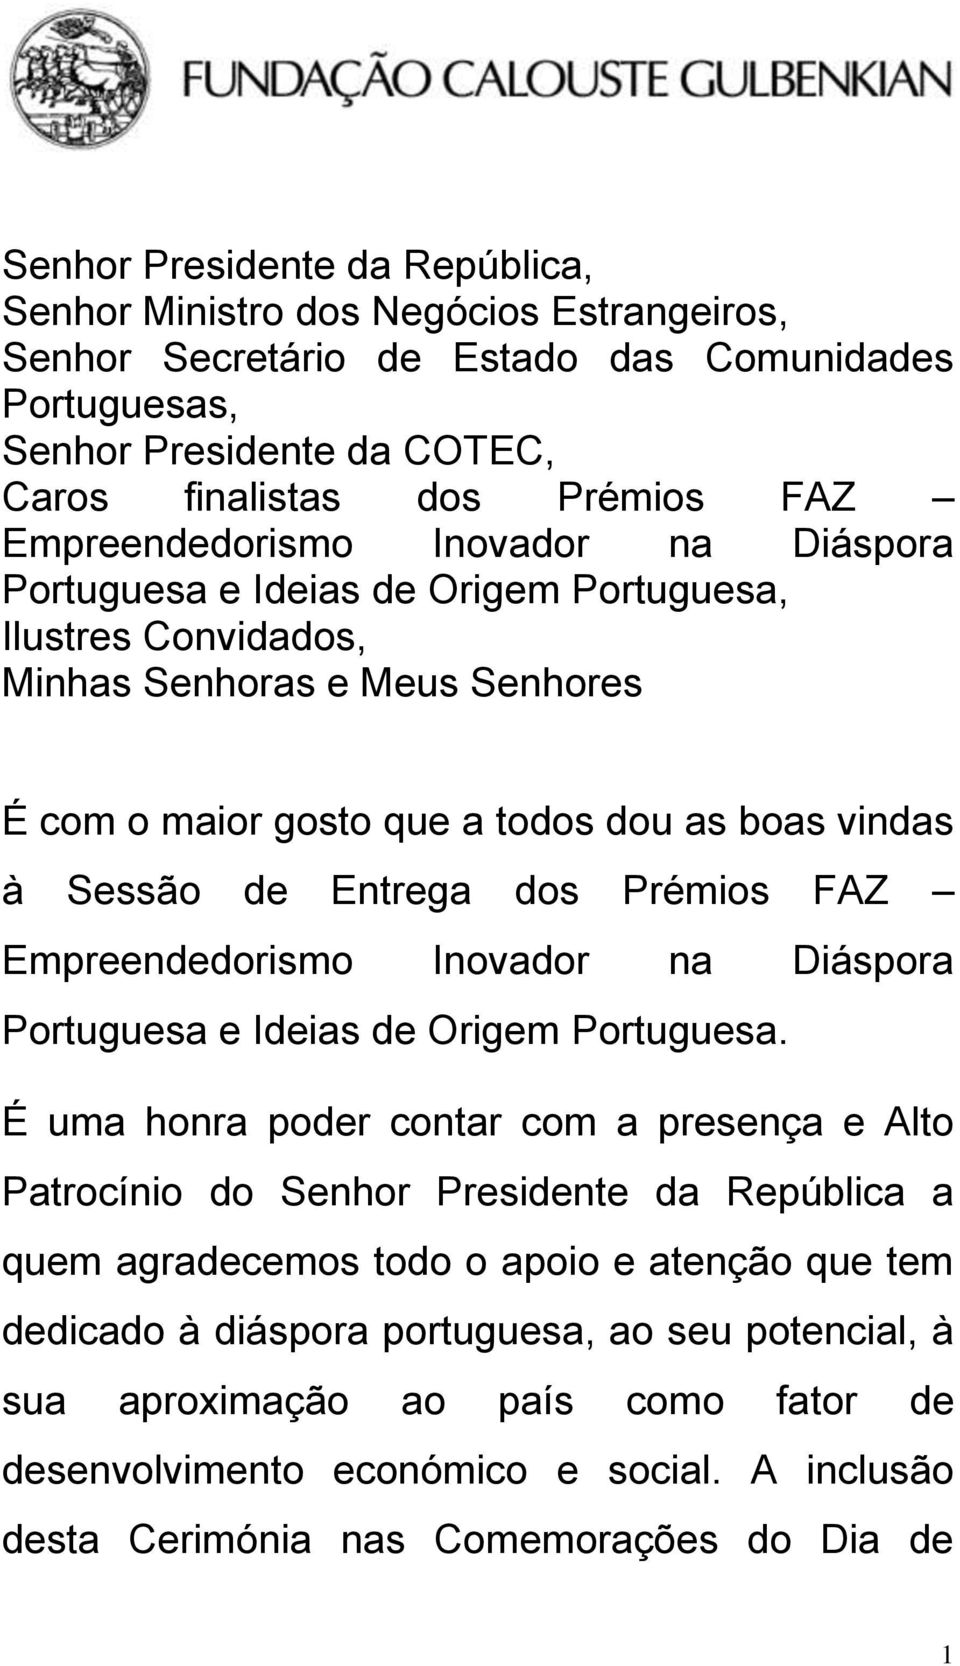 Entrega dos Prémios FAZ Empreendedorismo Inovador na Diáspora Portuguesa e Ideias de Origem Portuguesa.